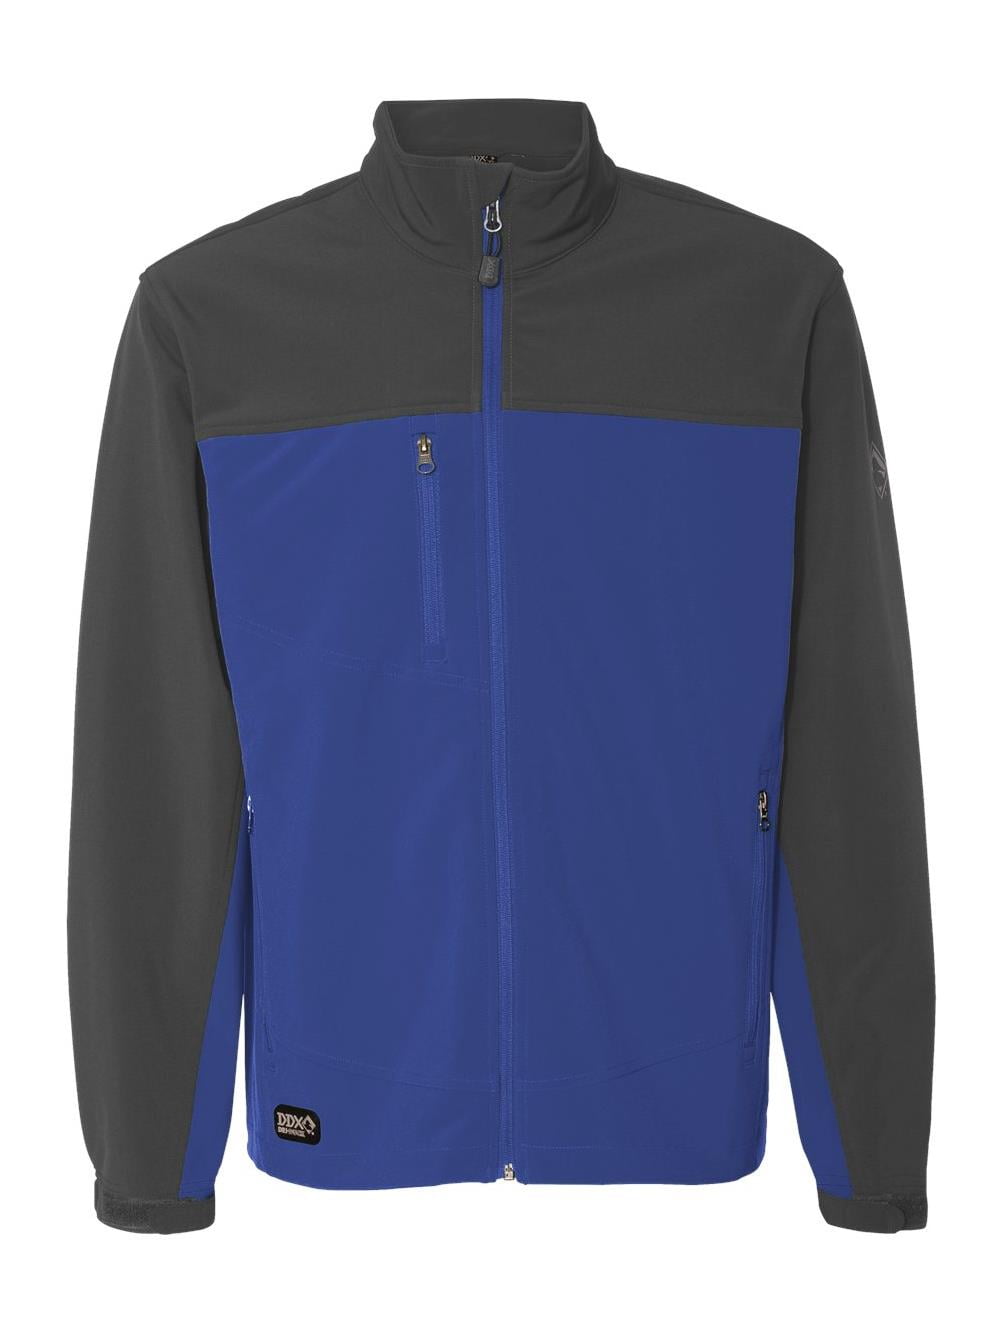 DRI DUCK Outerwear Motion Soft Shell Jacket 5350 - Walmart.com